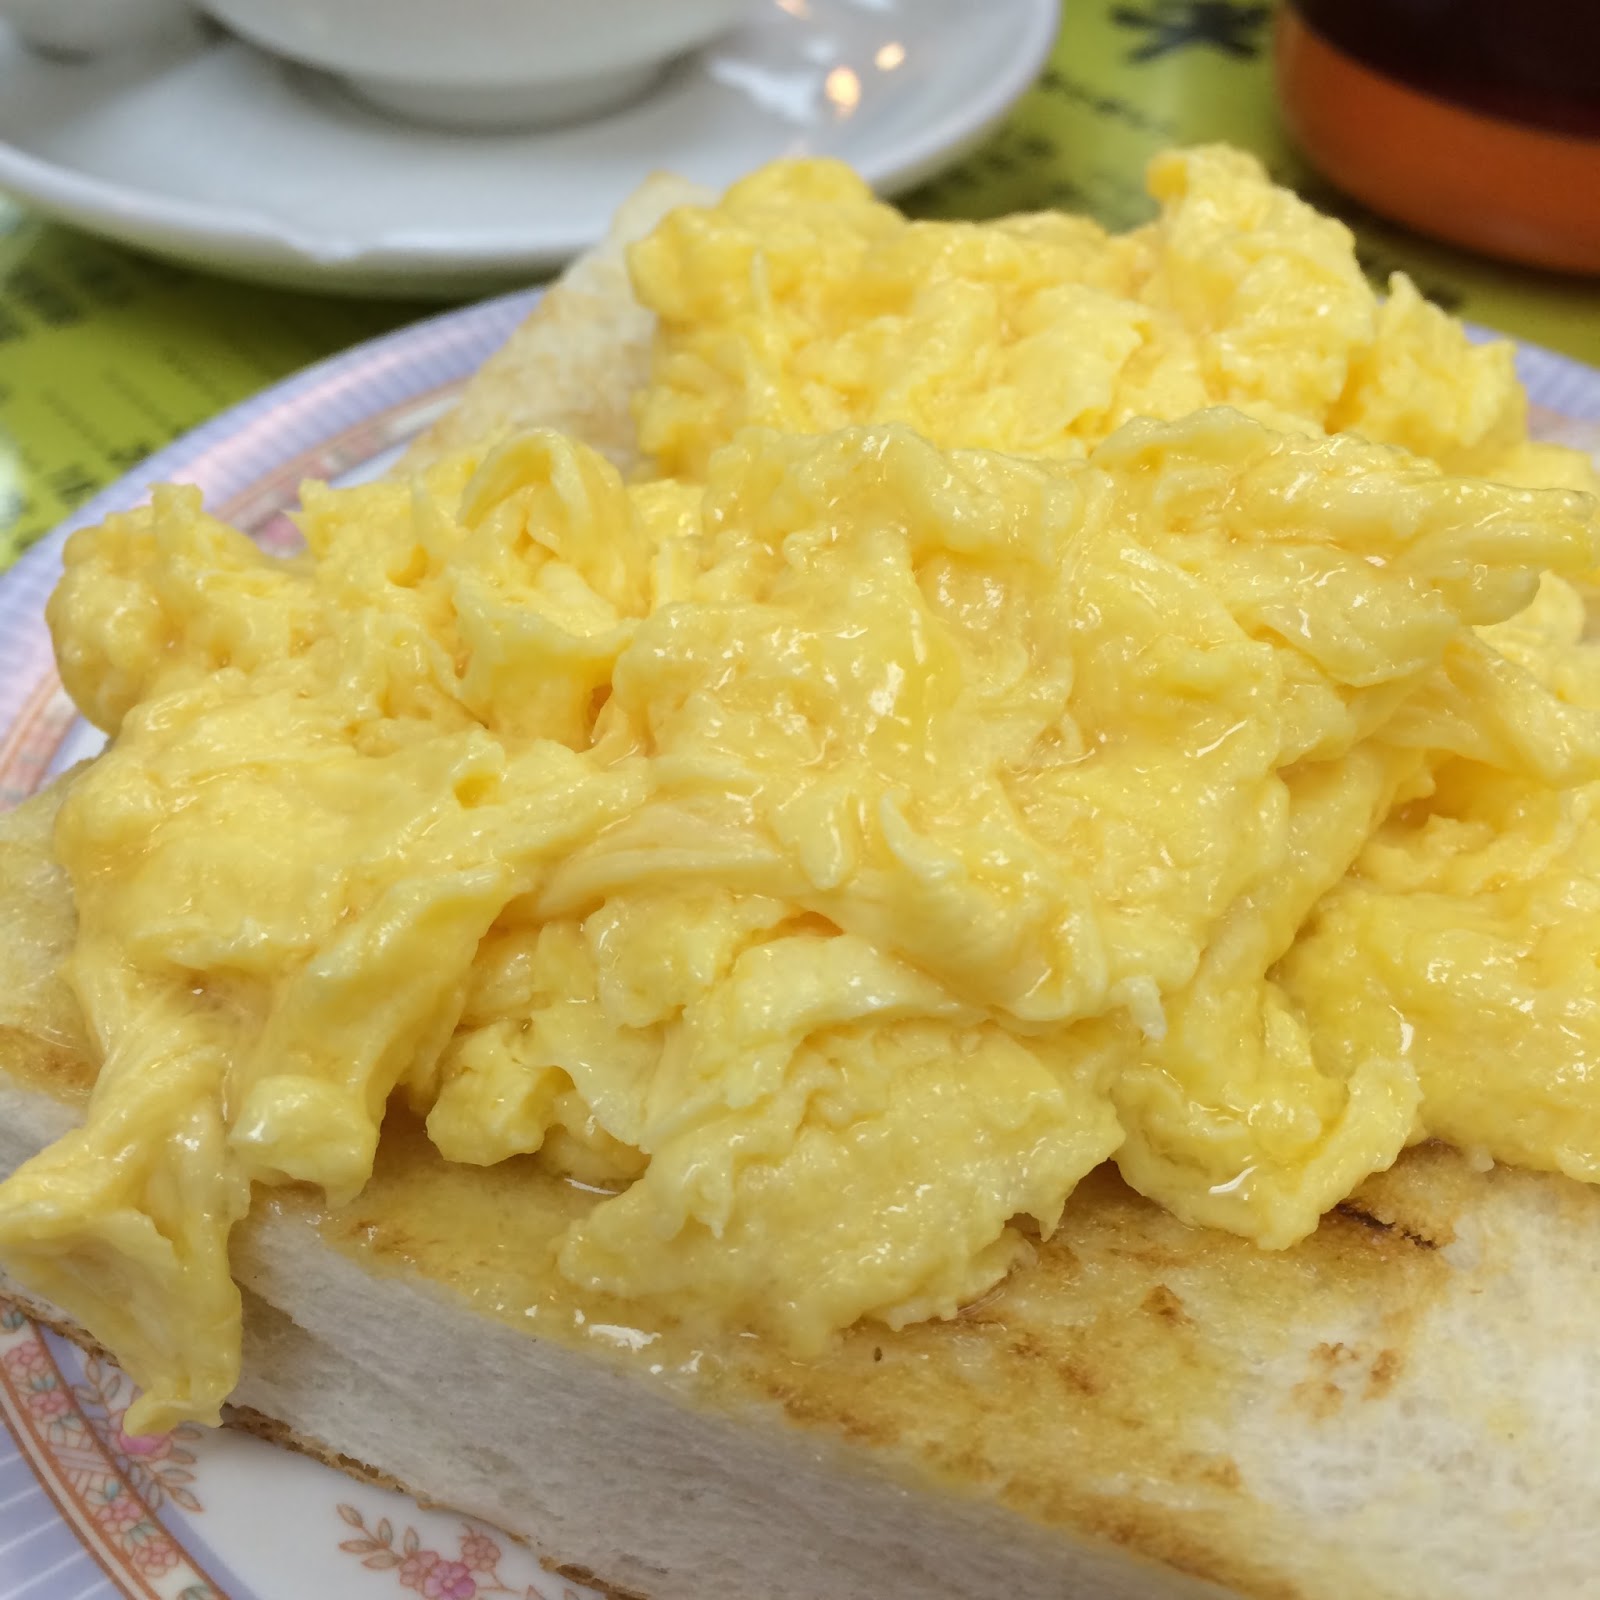 Fluffy scrambled eggs